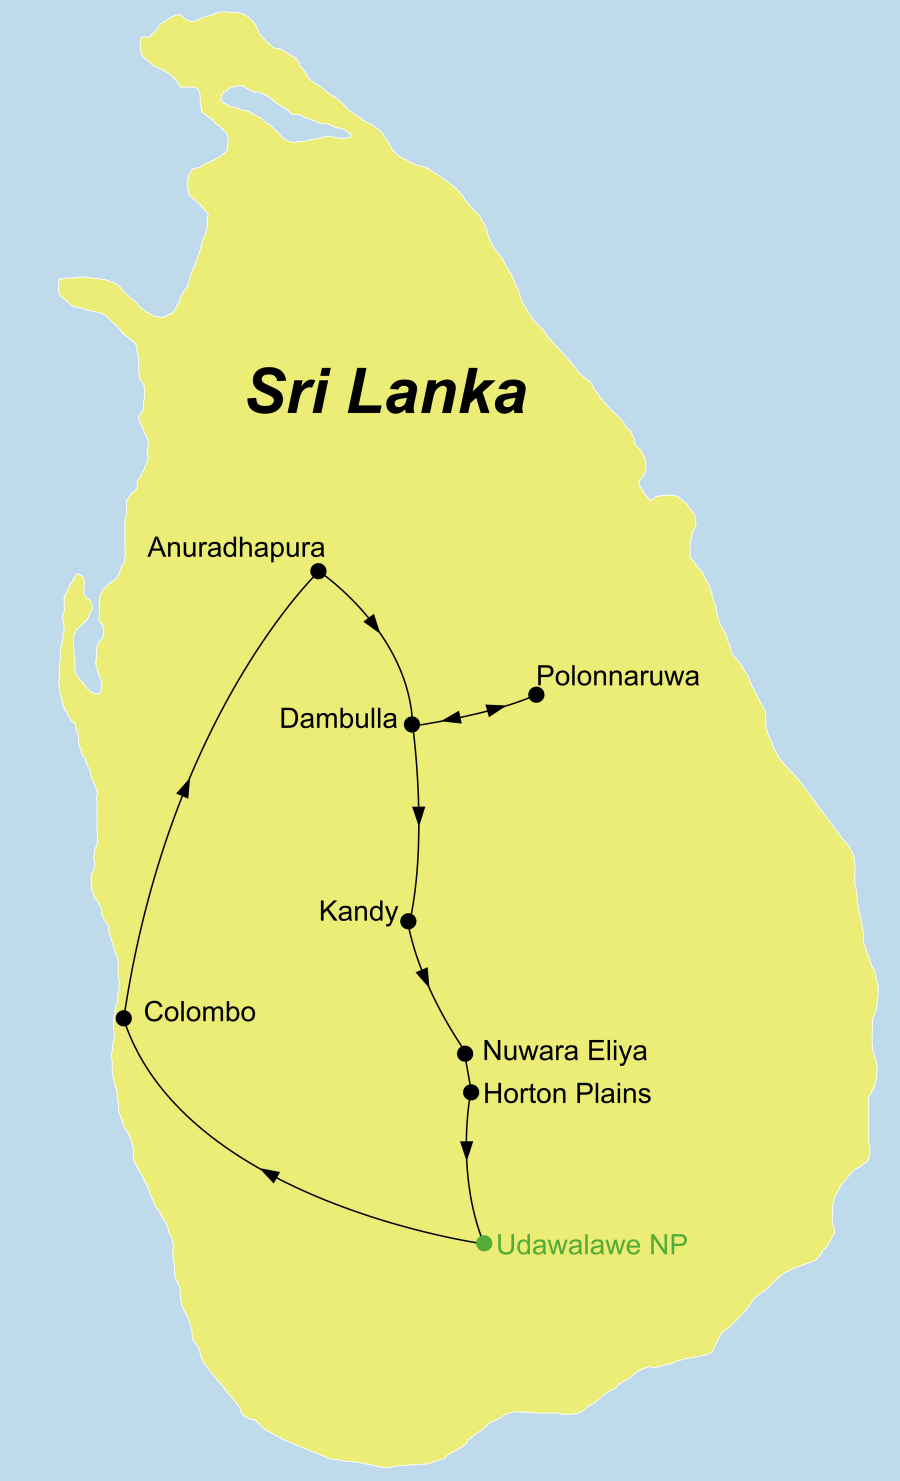 Die Rundreise Perle im indischen Ozean führt von Colombo nach Anuradhapura über Polonnaruwa und Kandy zum Udawalawe Nationalpark